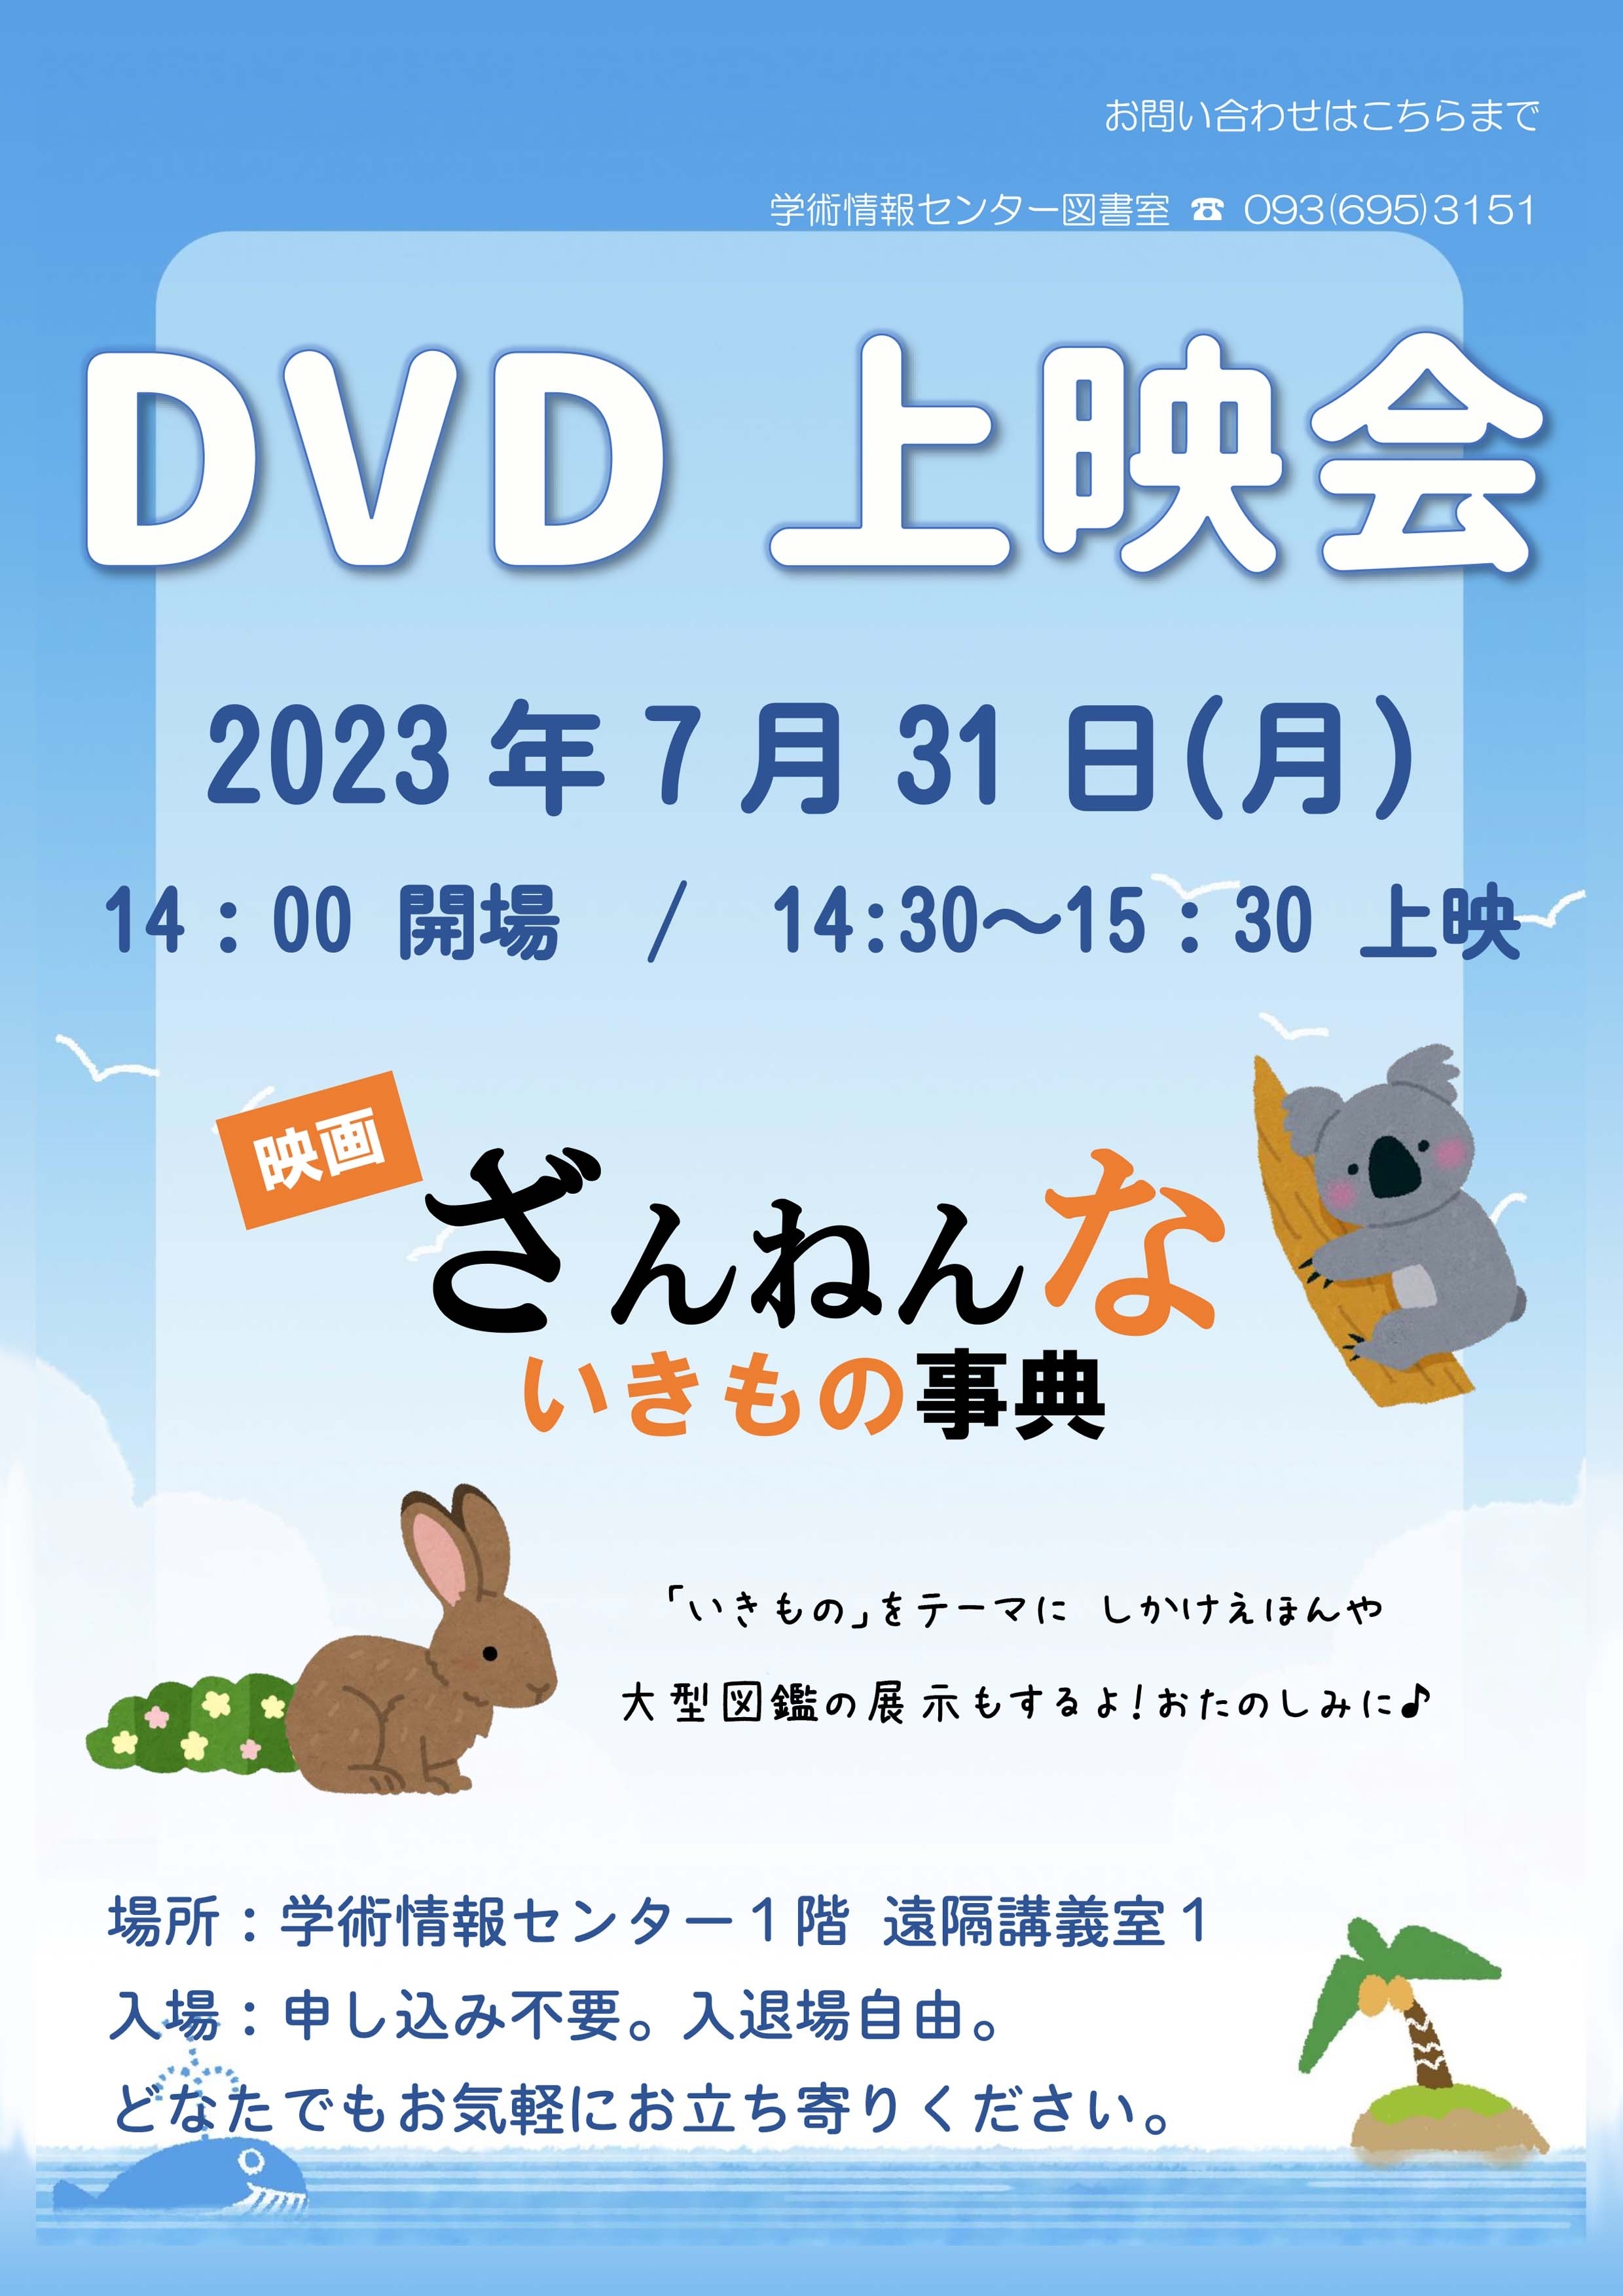 DVD上映会